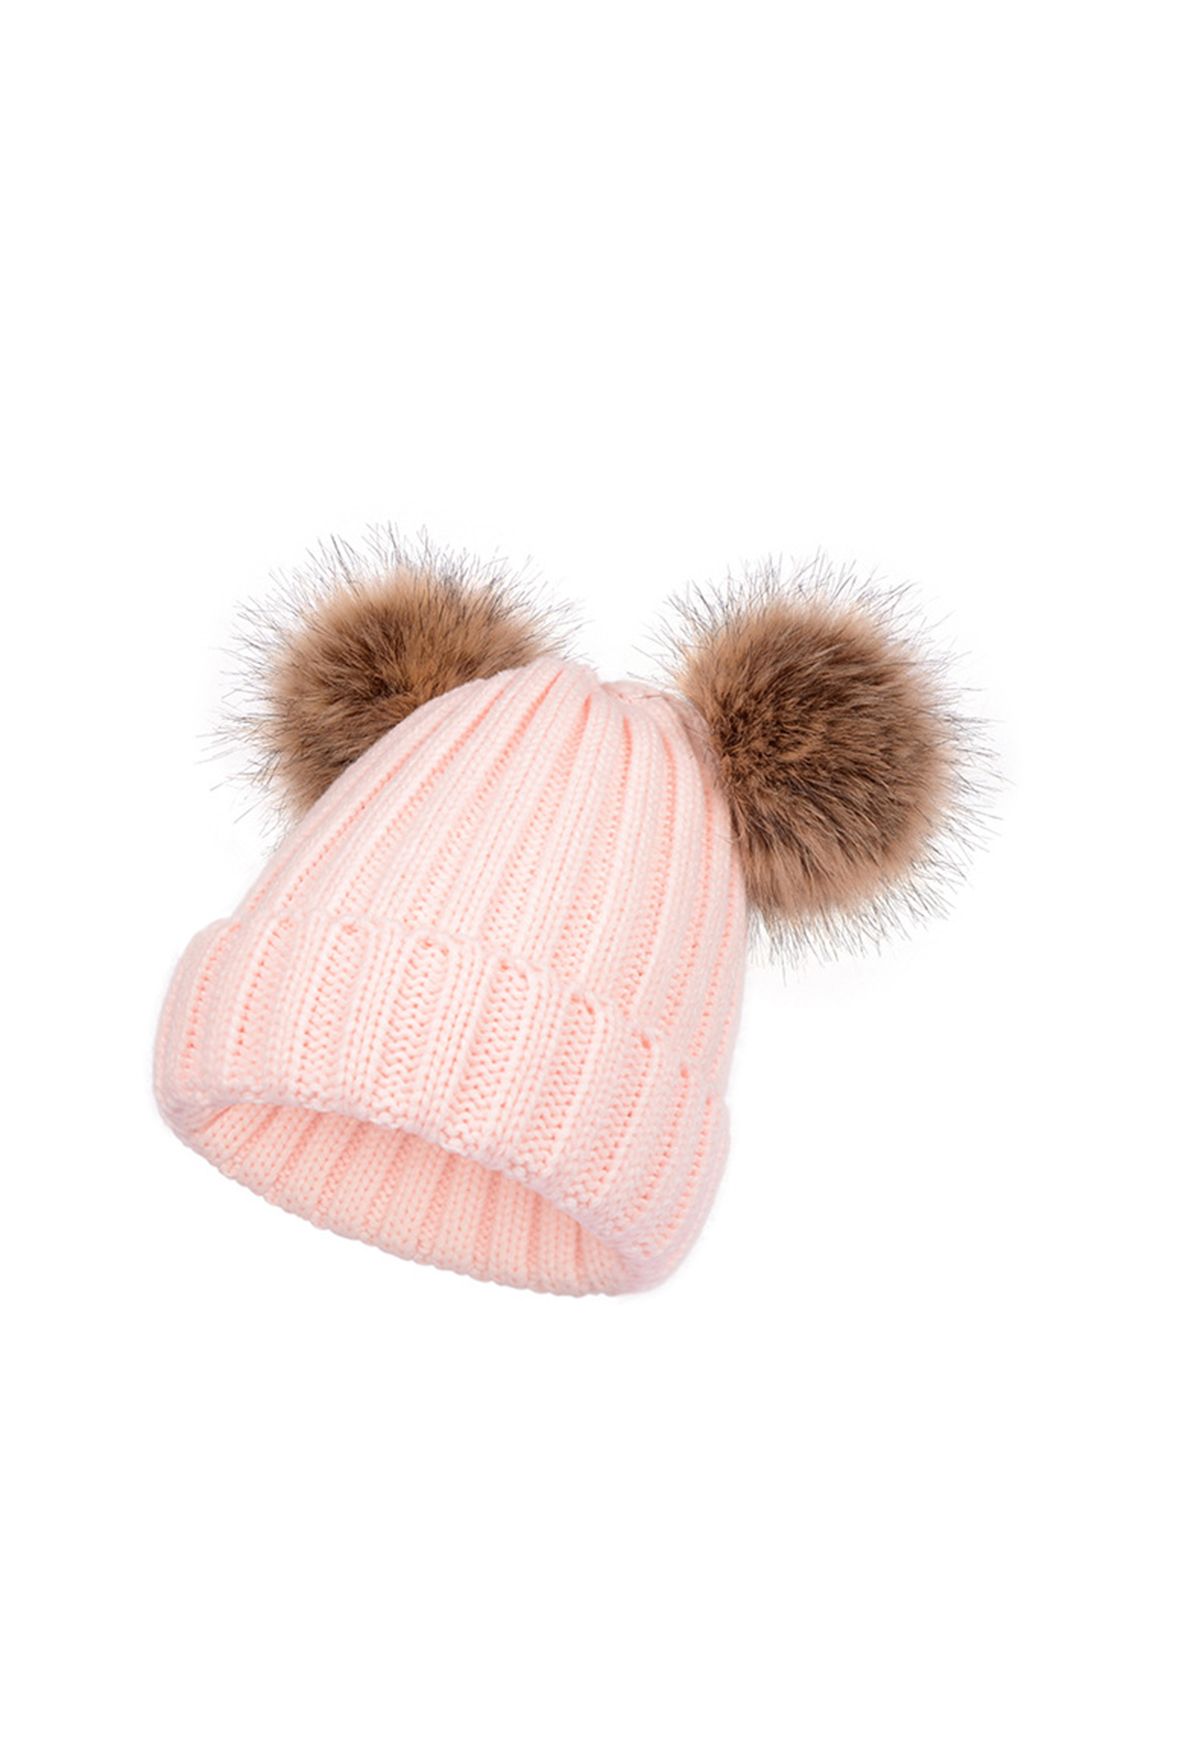 قبعة صغيرة متماسكة بوم بوم ضبابية باللون الوردي